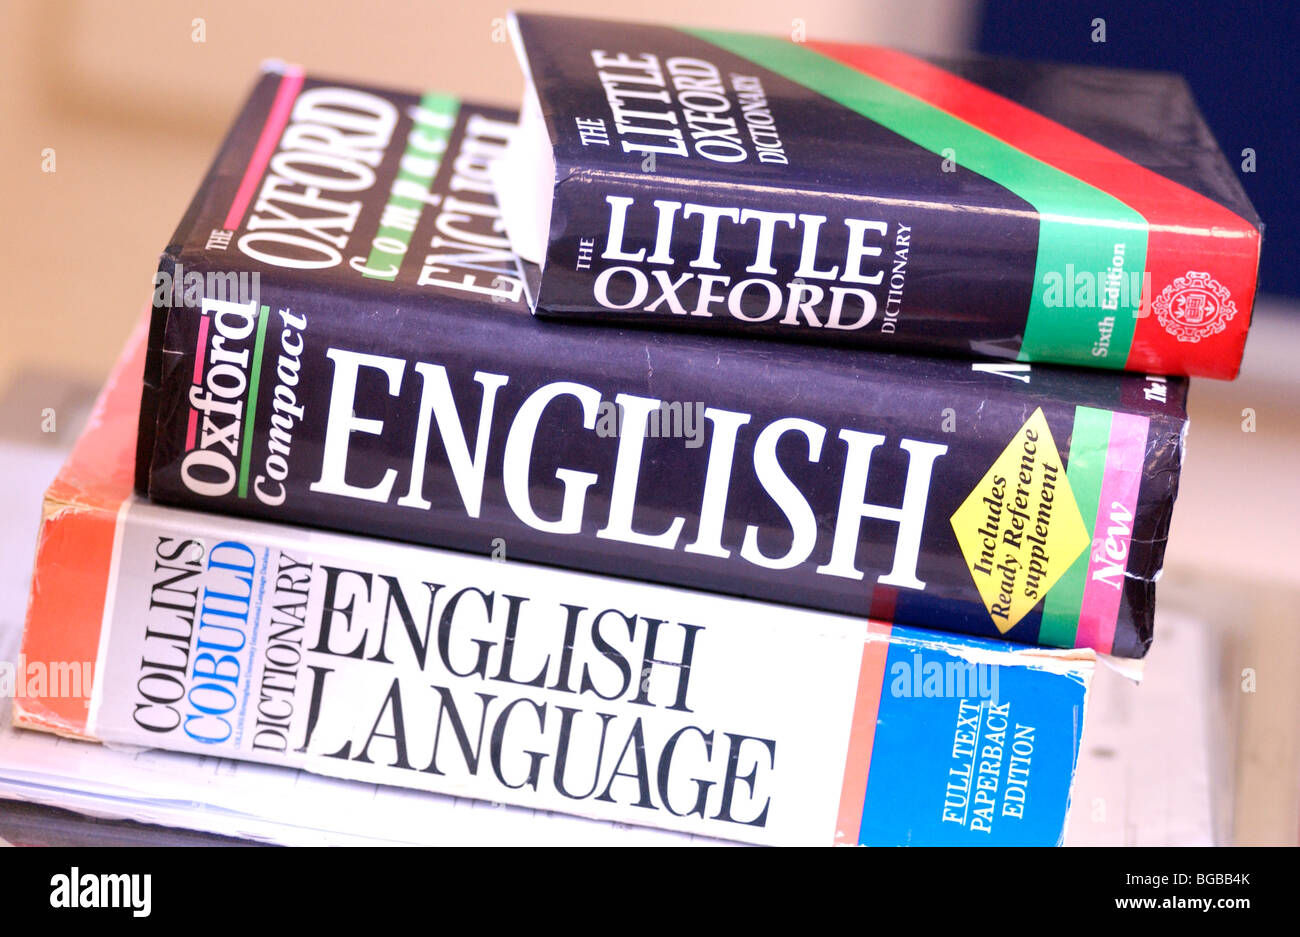 Знать английский в совершенстве. Английский язык. Стопка английских книг. Книги на английском. Учебники английского языка стопка.